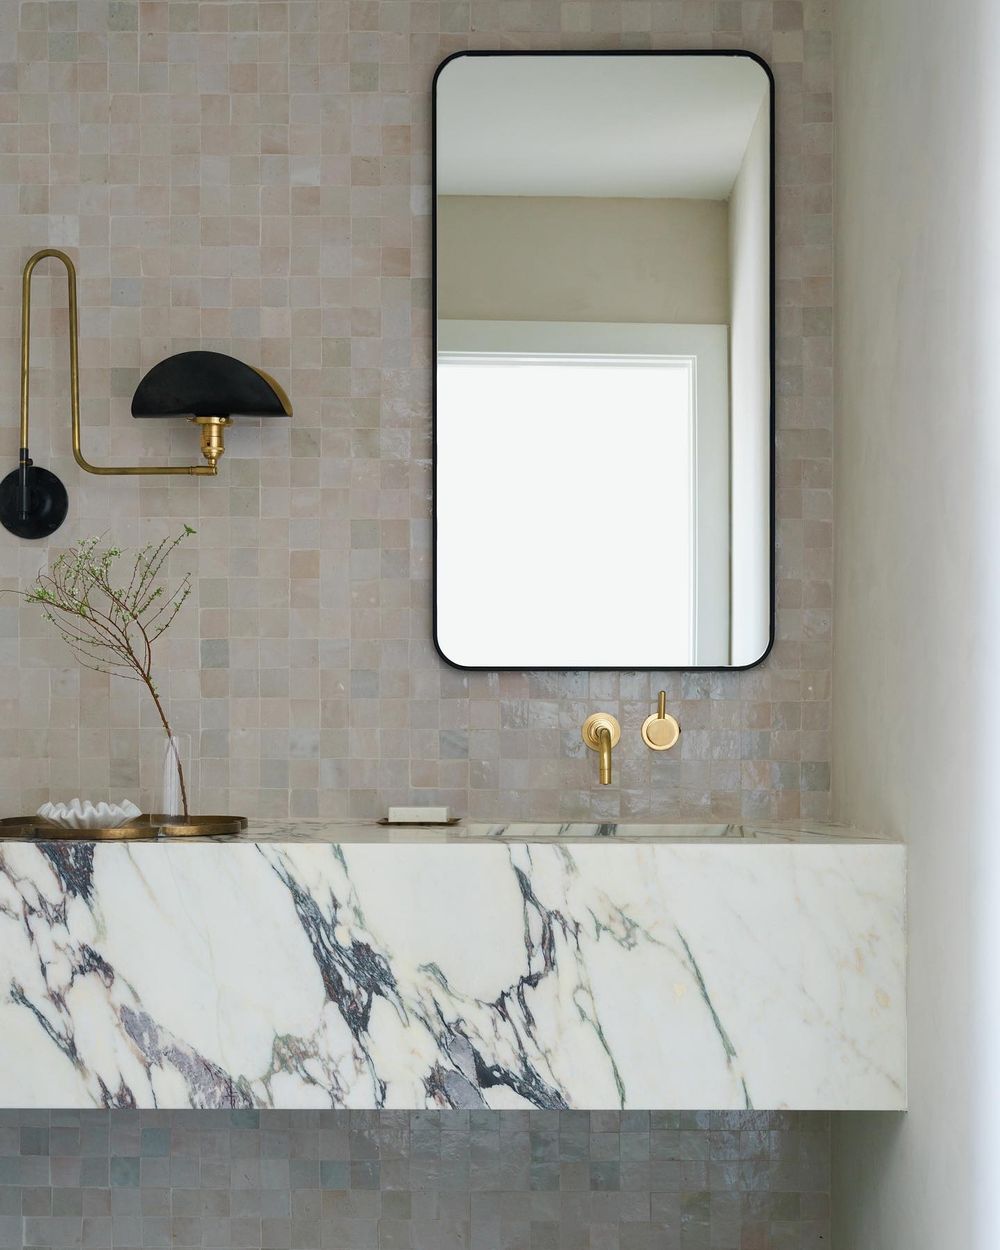 Modern bathroom design ideas @anaberdesign